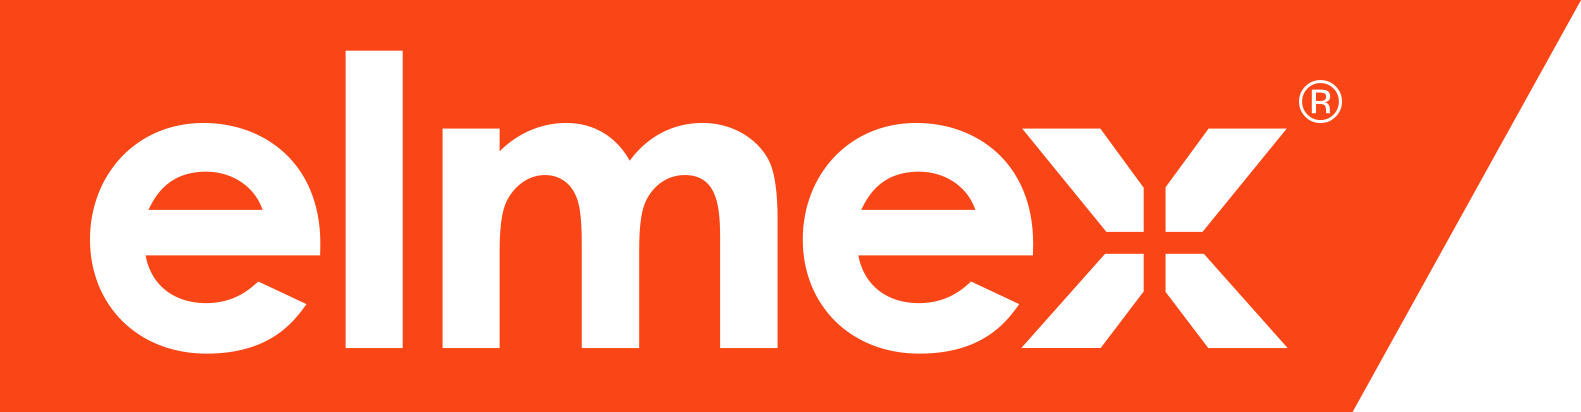 logo elmex